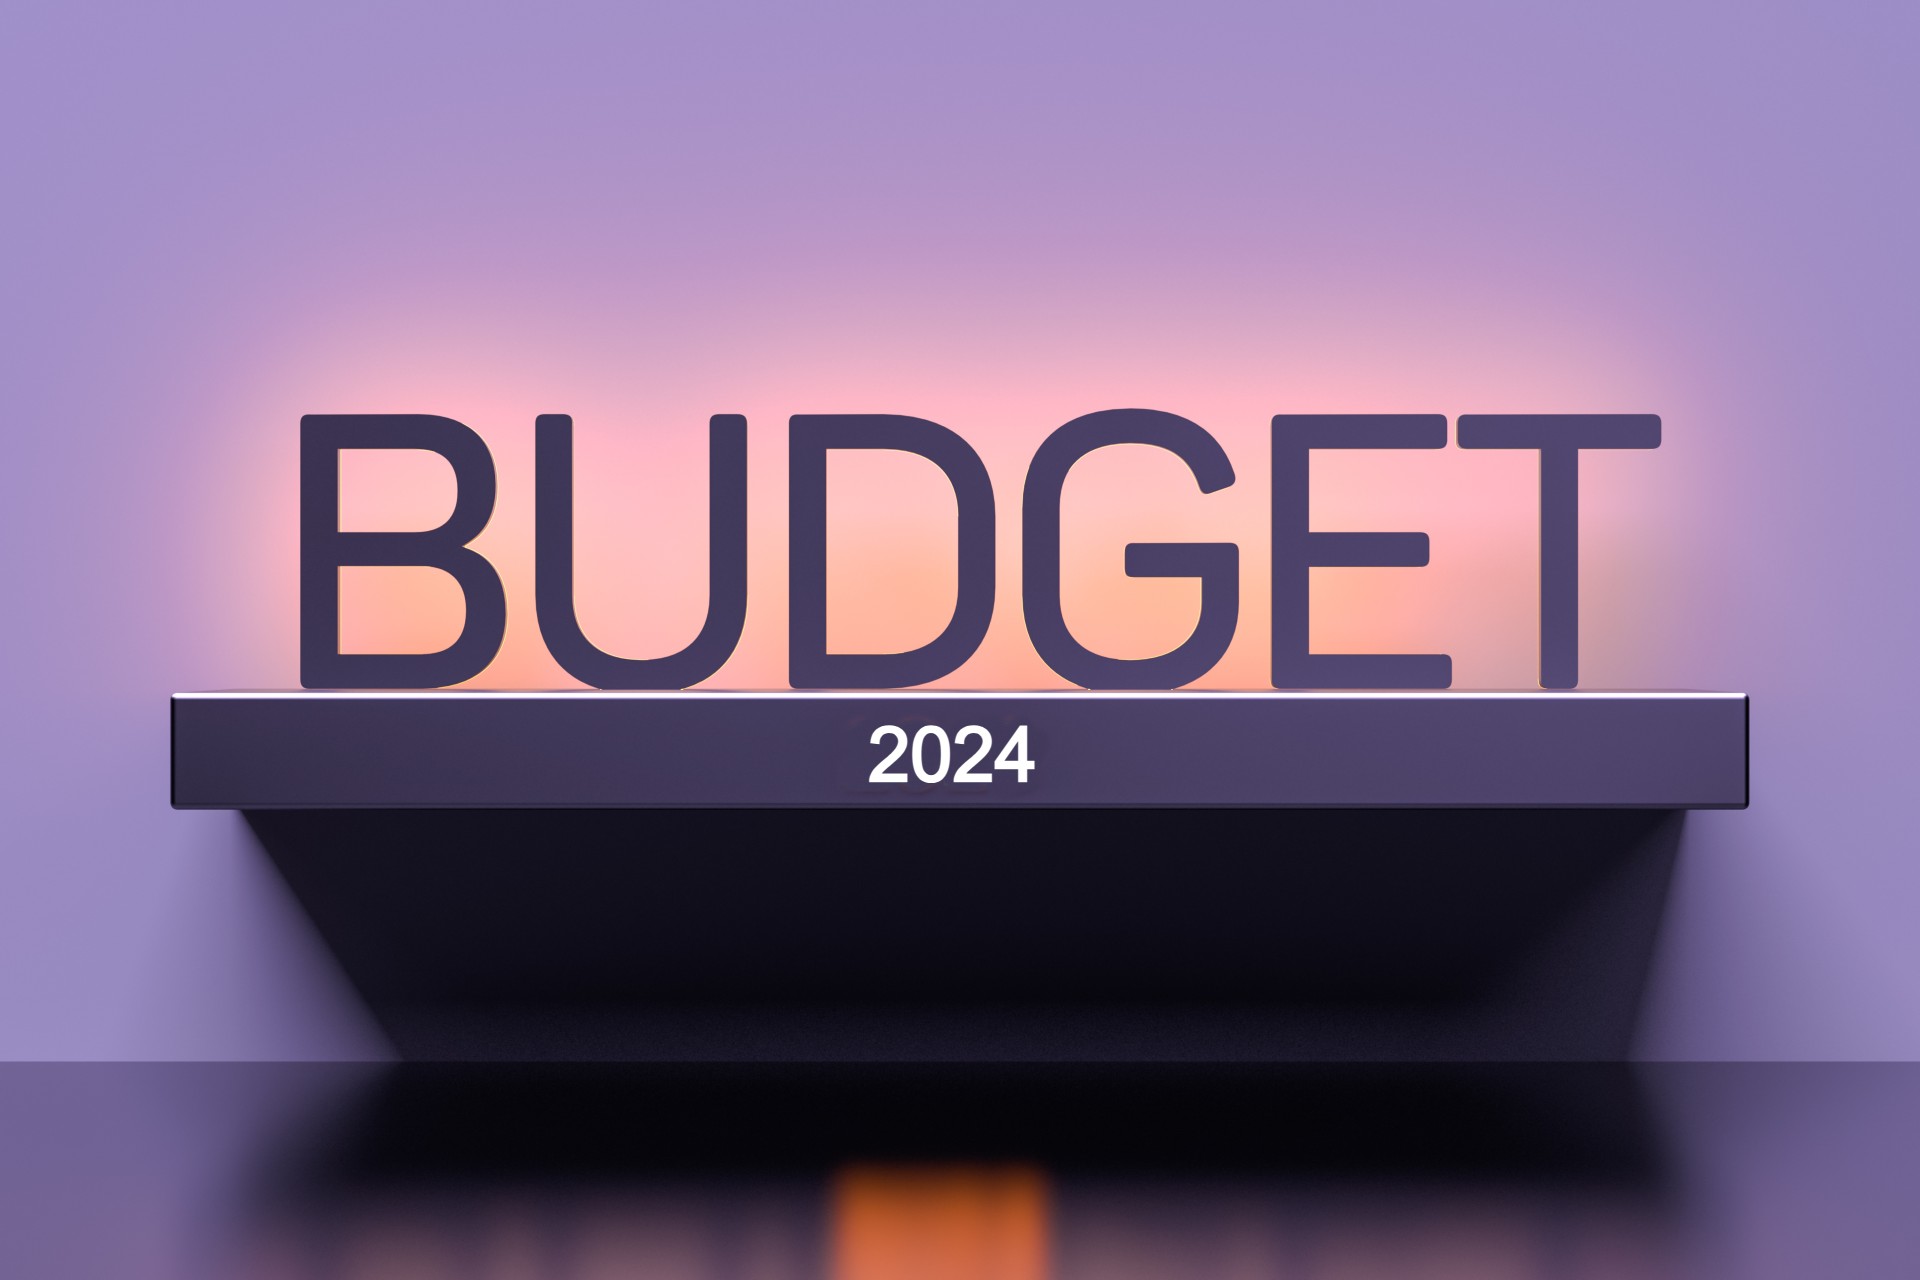 Ο Προϋπολογισμός, διχάζει, αντί να ενώνει σε βασικές του τουλάχιστον παραδοχές